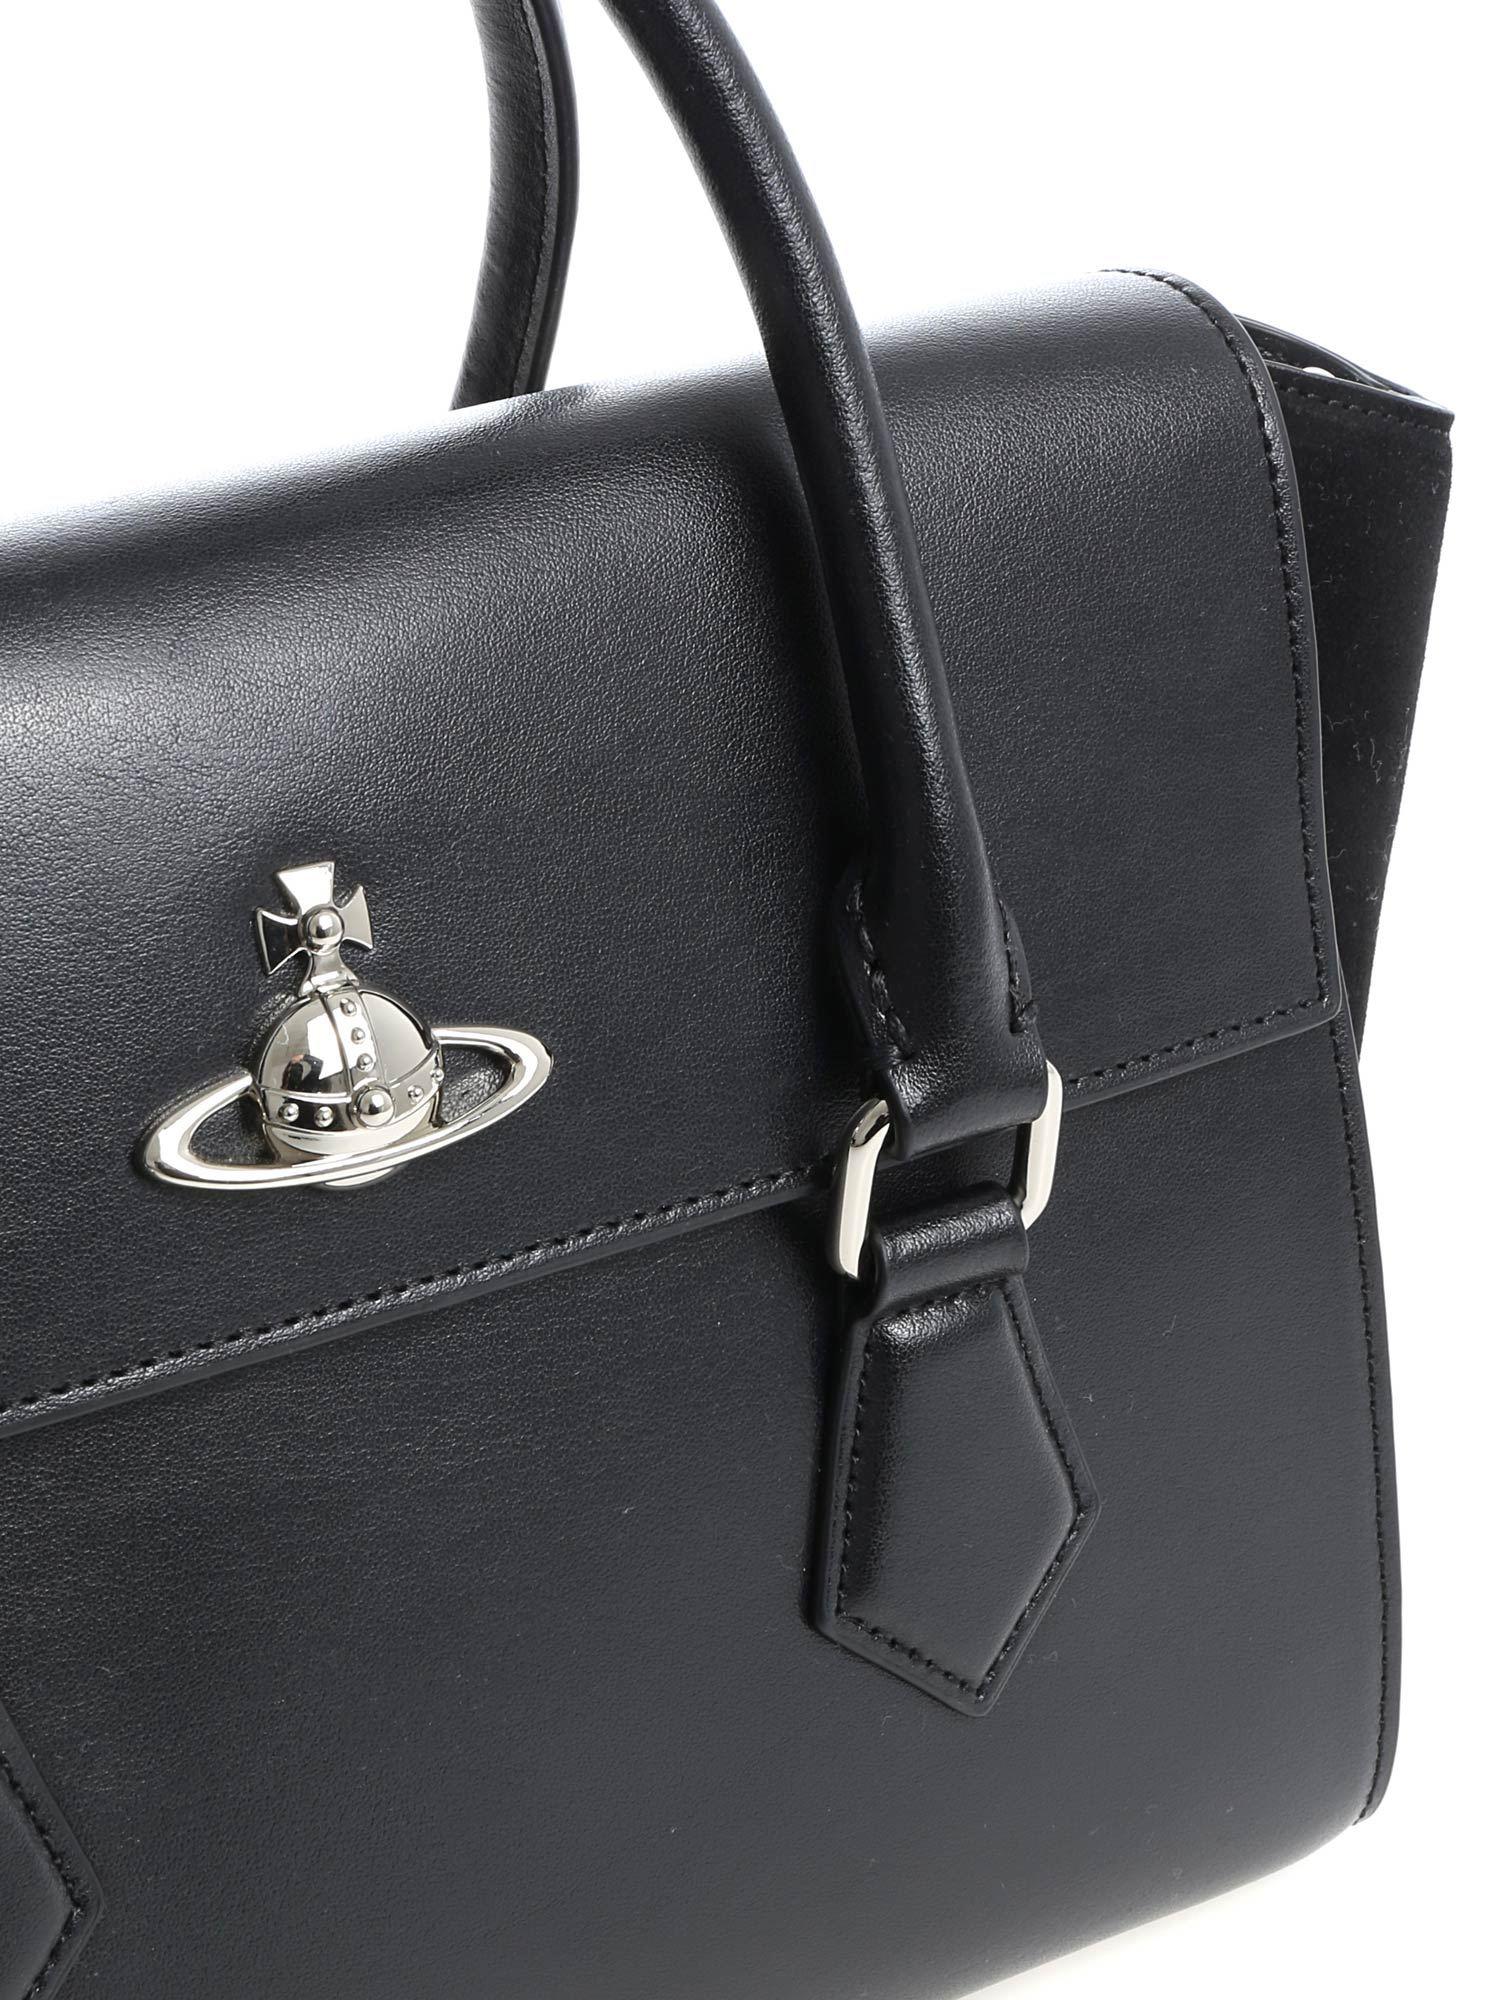 Vivienne Westwood Leather Matilda Tote Bag in Black - Lyst